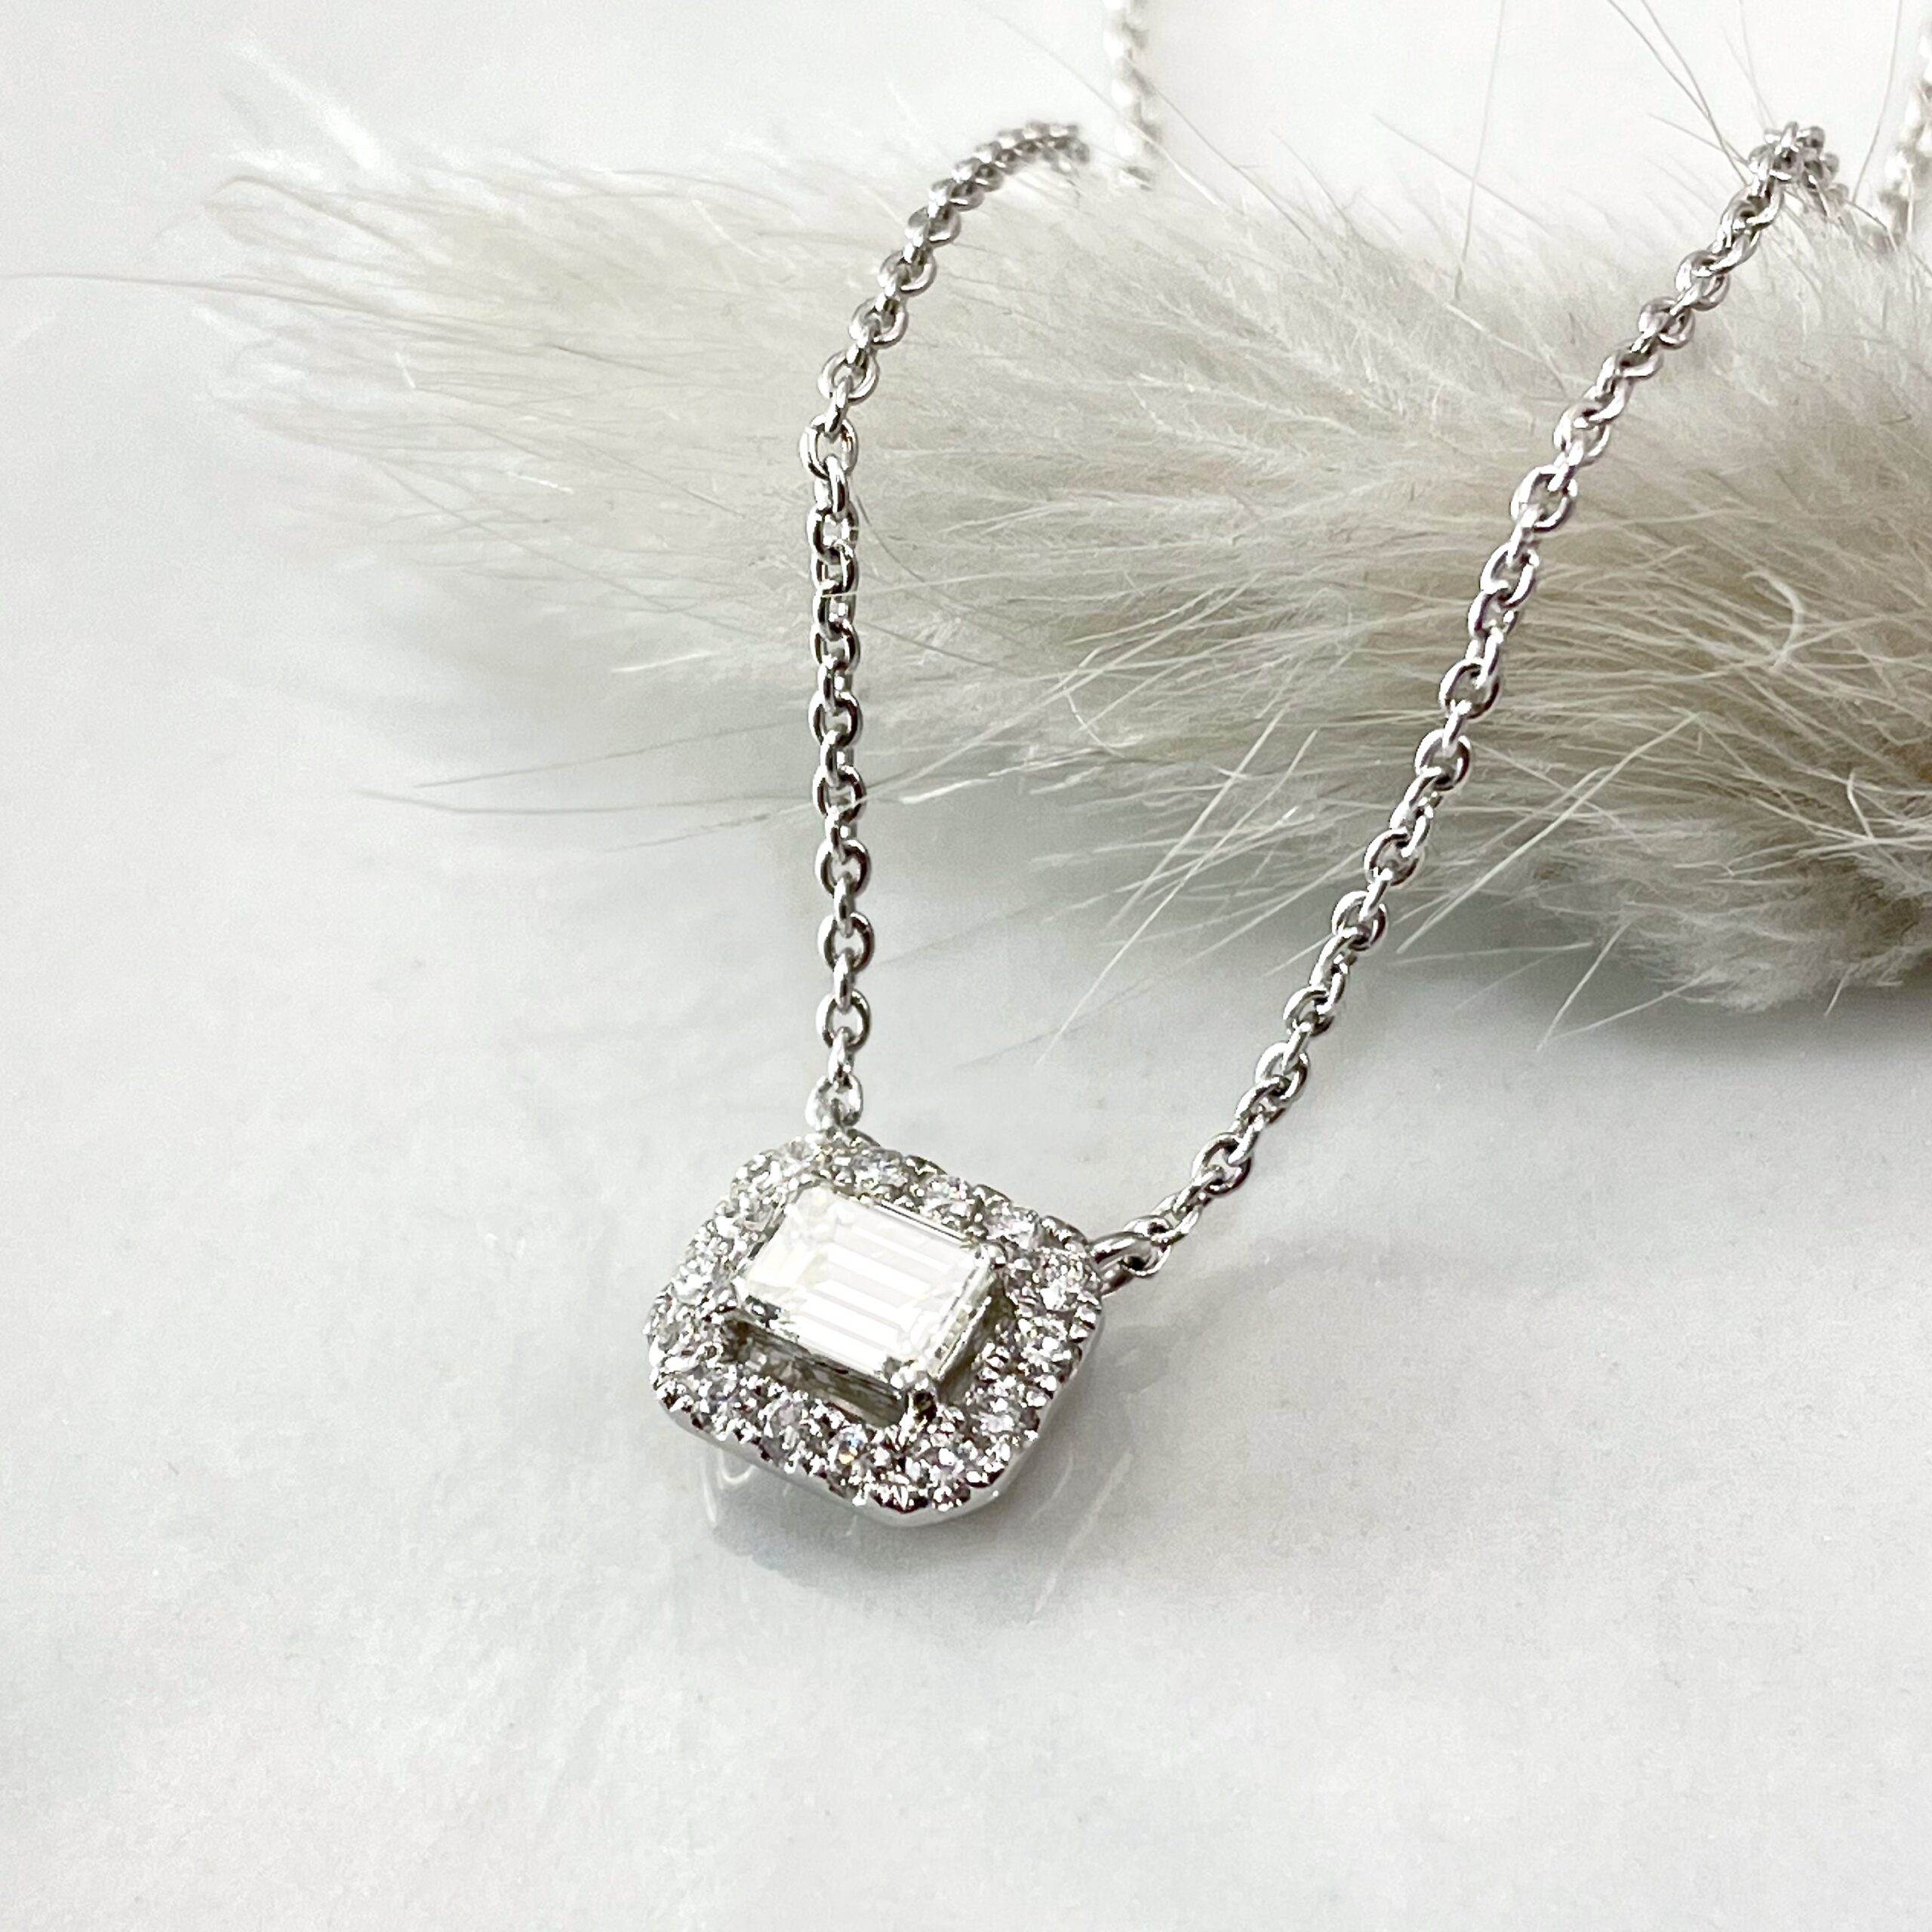 Emerald Cut Diamond Pendant Necklace - SOLD - Sholdt Jewelry Design